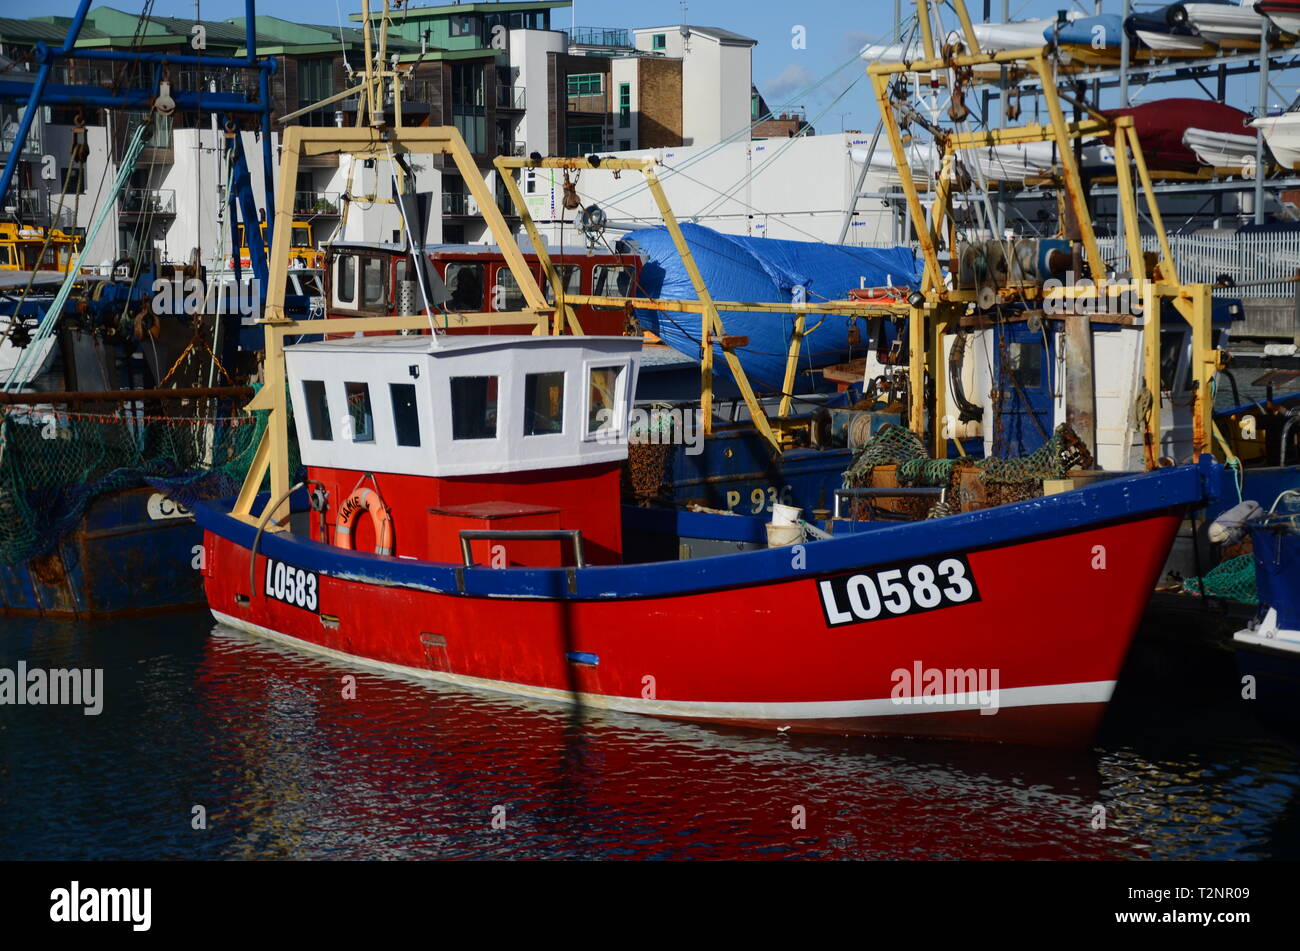 Bateau de pêche dans les ports, l'industrie de la pêche au Royaume-Uni Banque D'Images